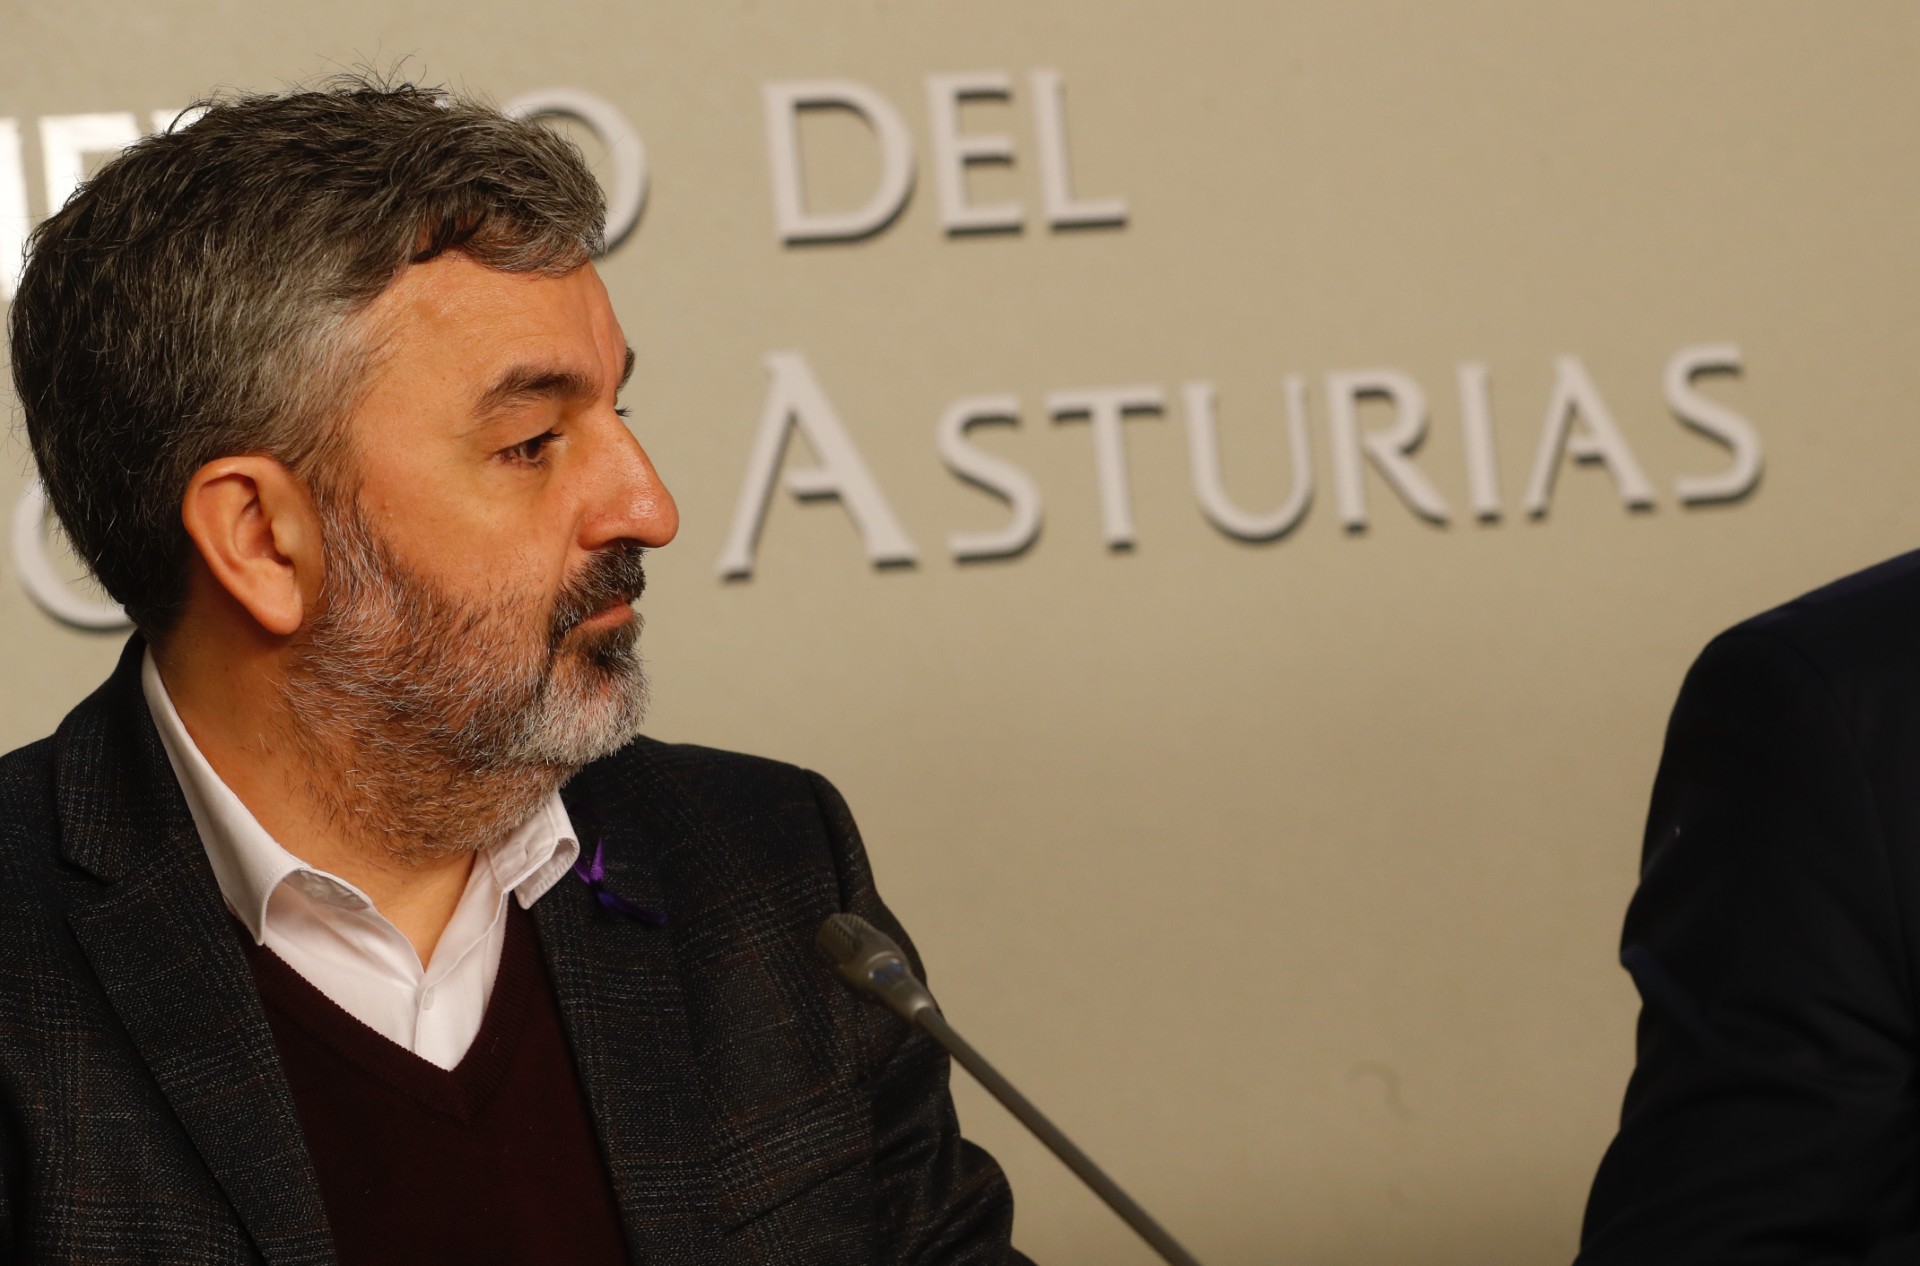 Image 7 of article El Gobierno de Asturias aprueba el primer Plan de Igualdad para la Administración autonómica, que creará una bolsa de horas para conciliación y dará prioridad a las reuniones entre las 9 y las 2